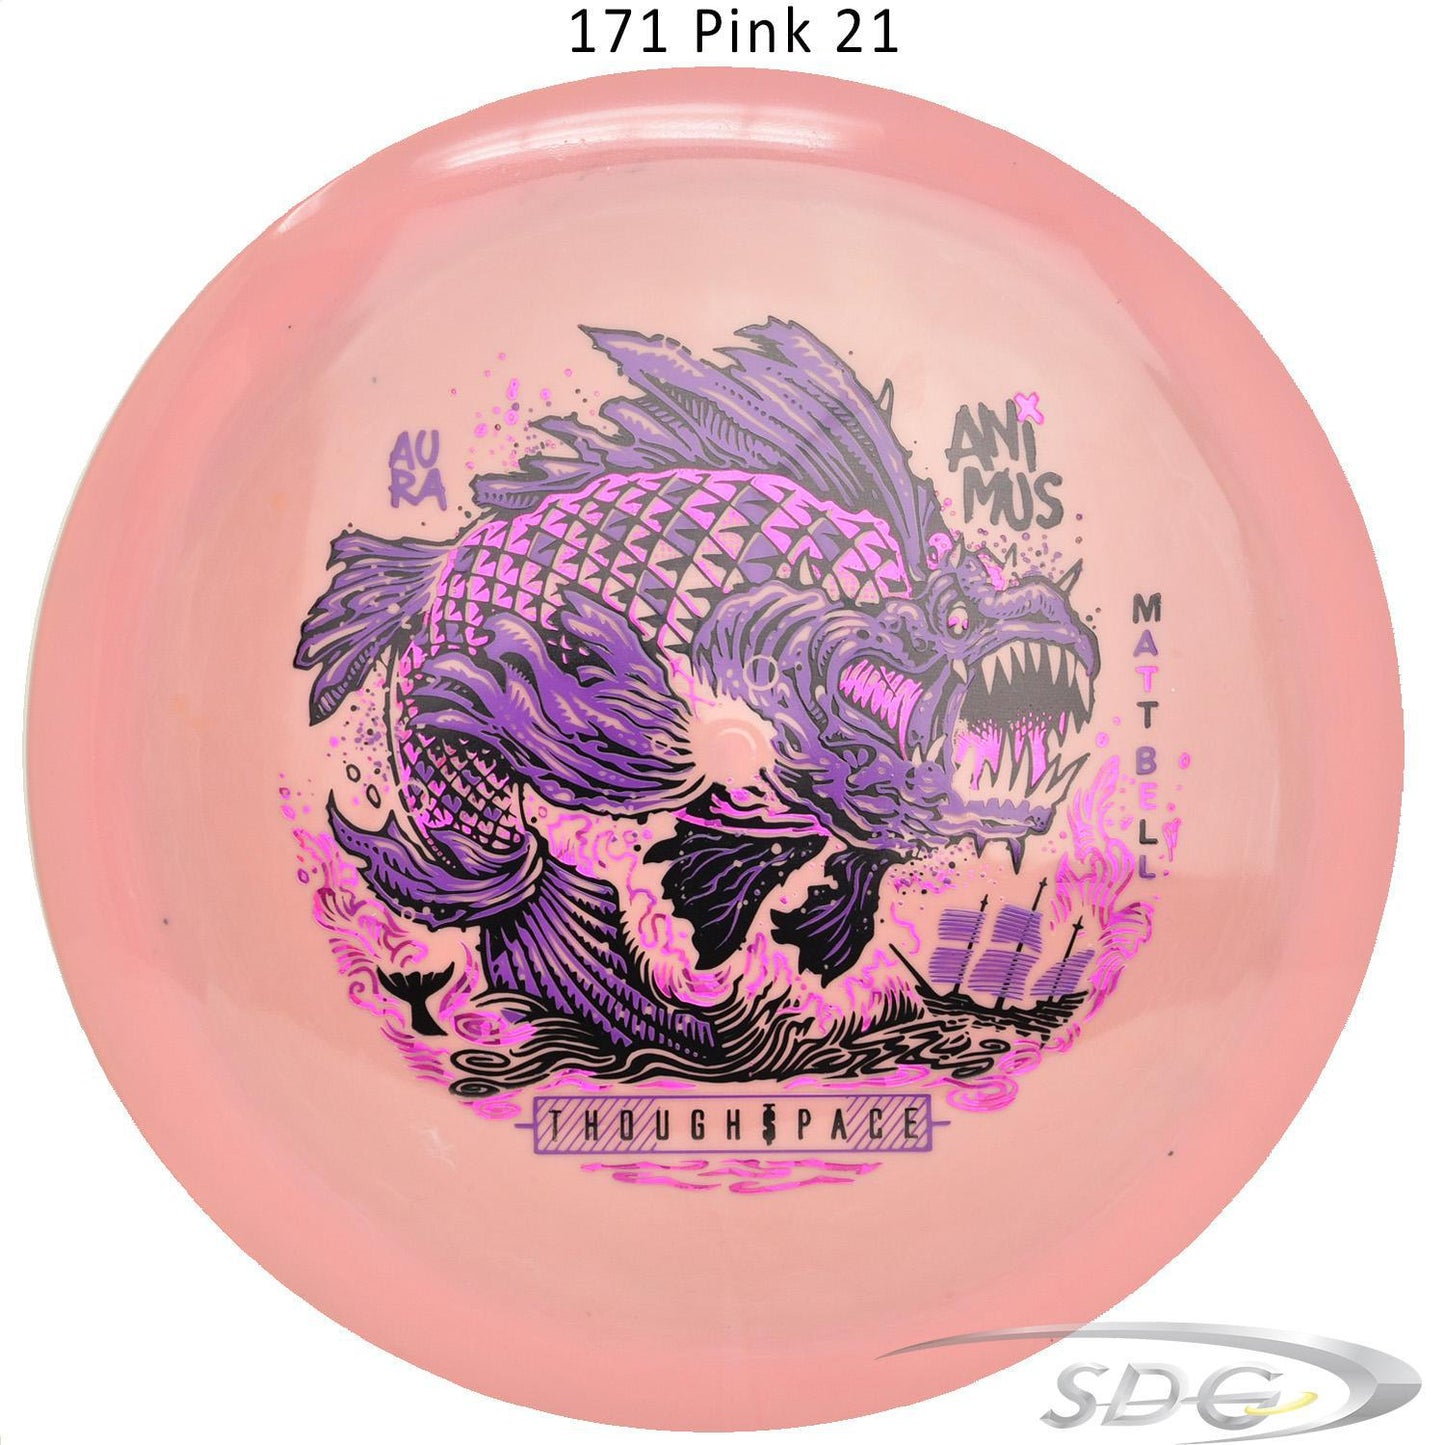 tsa-aura-animus-matt-bell-signature-series-disc-golf-distance-driver 171 Pink 21 